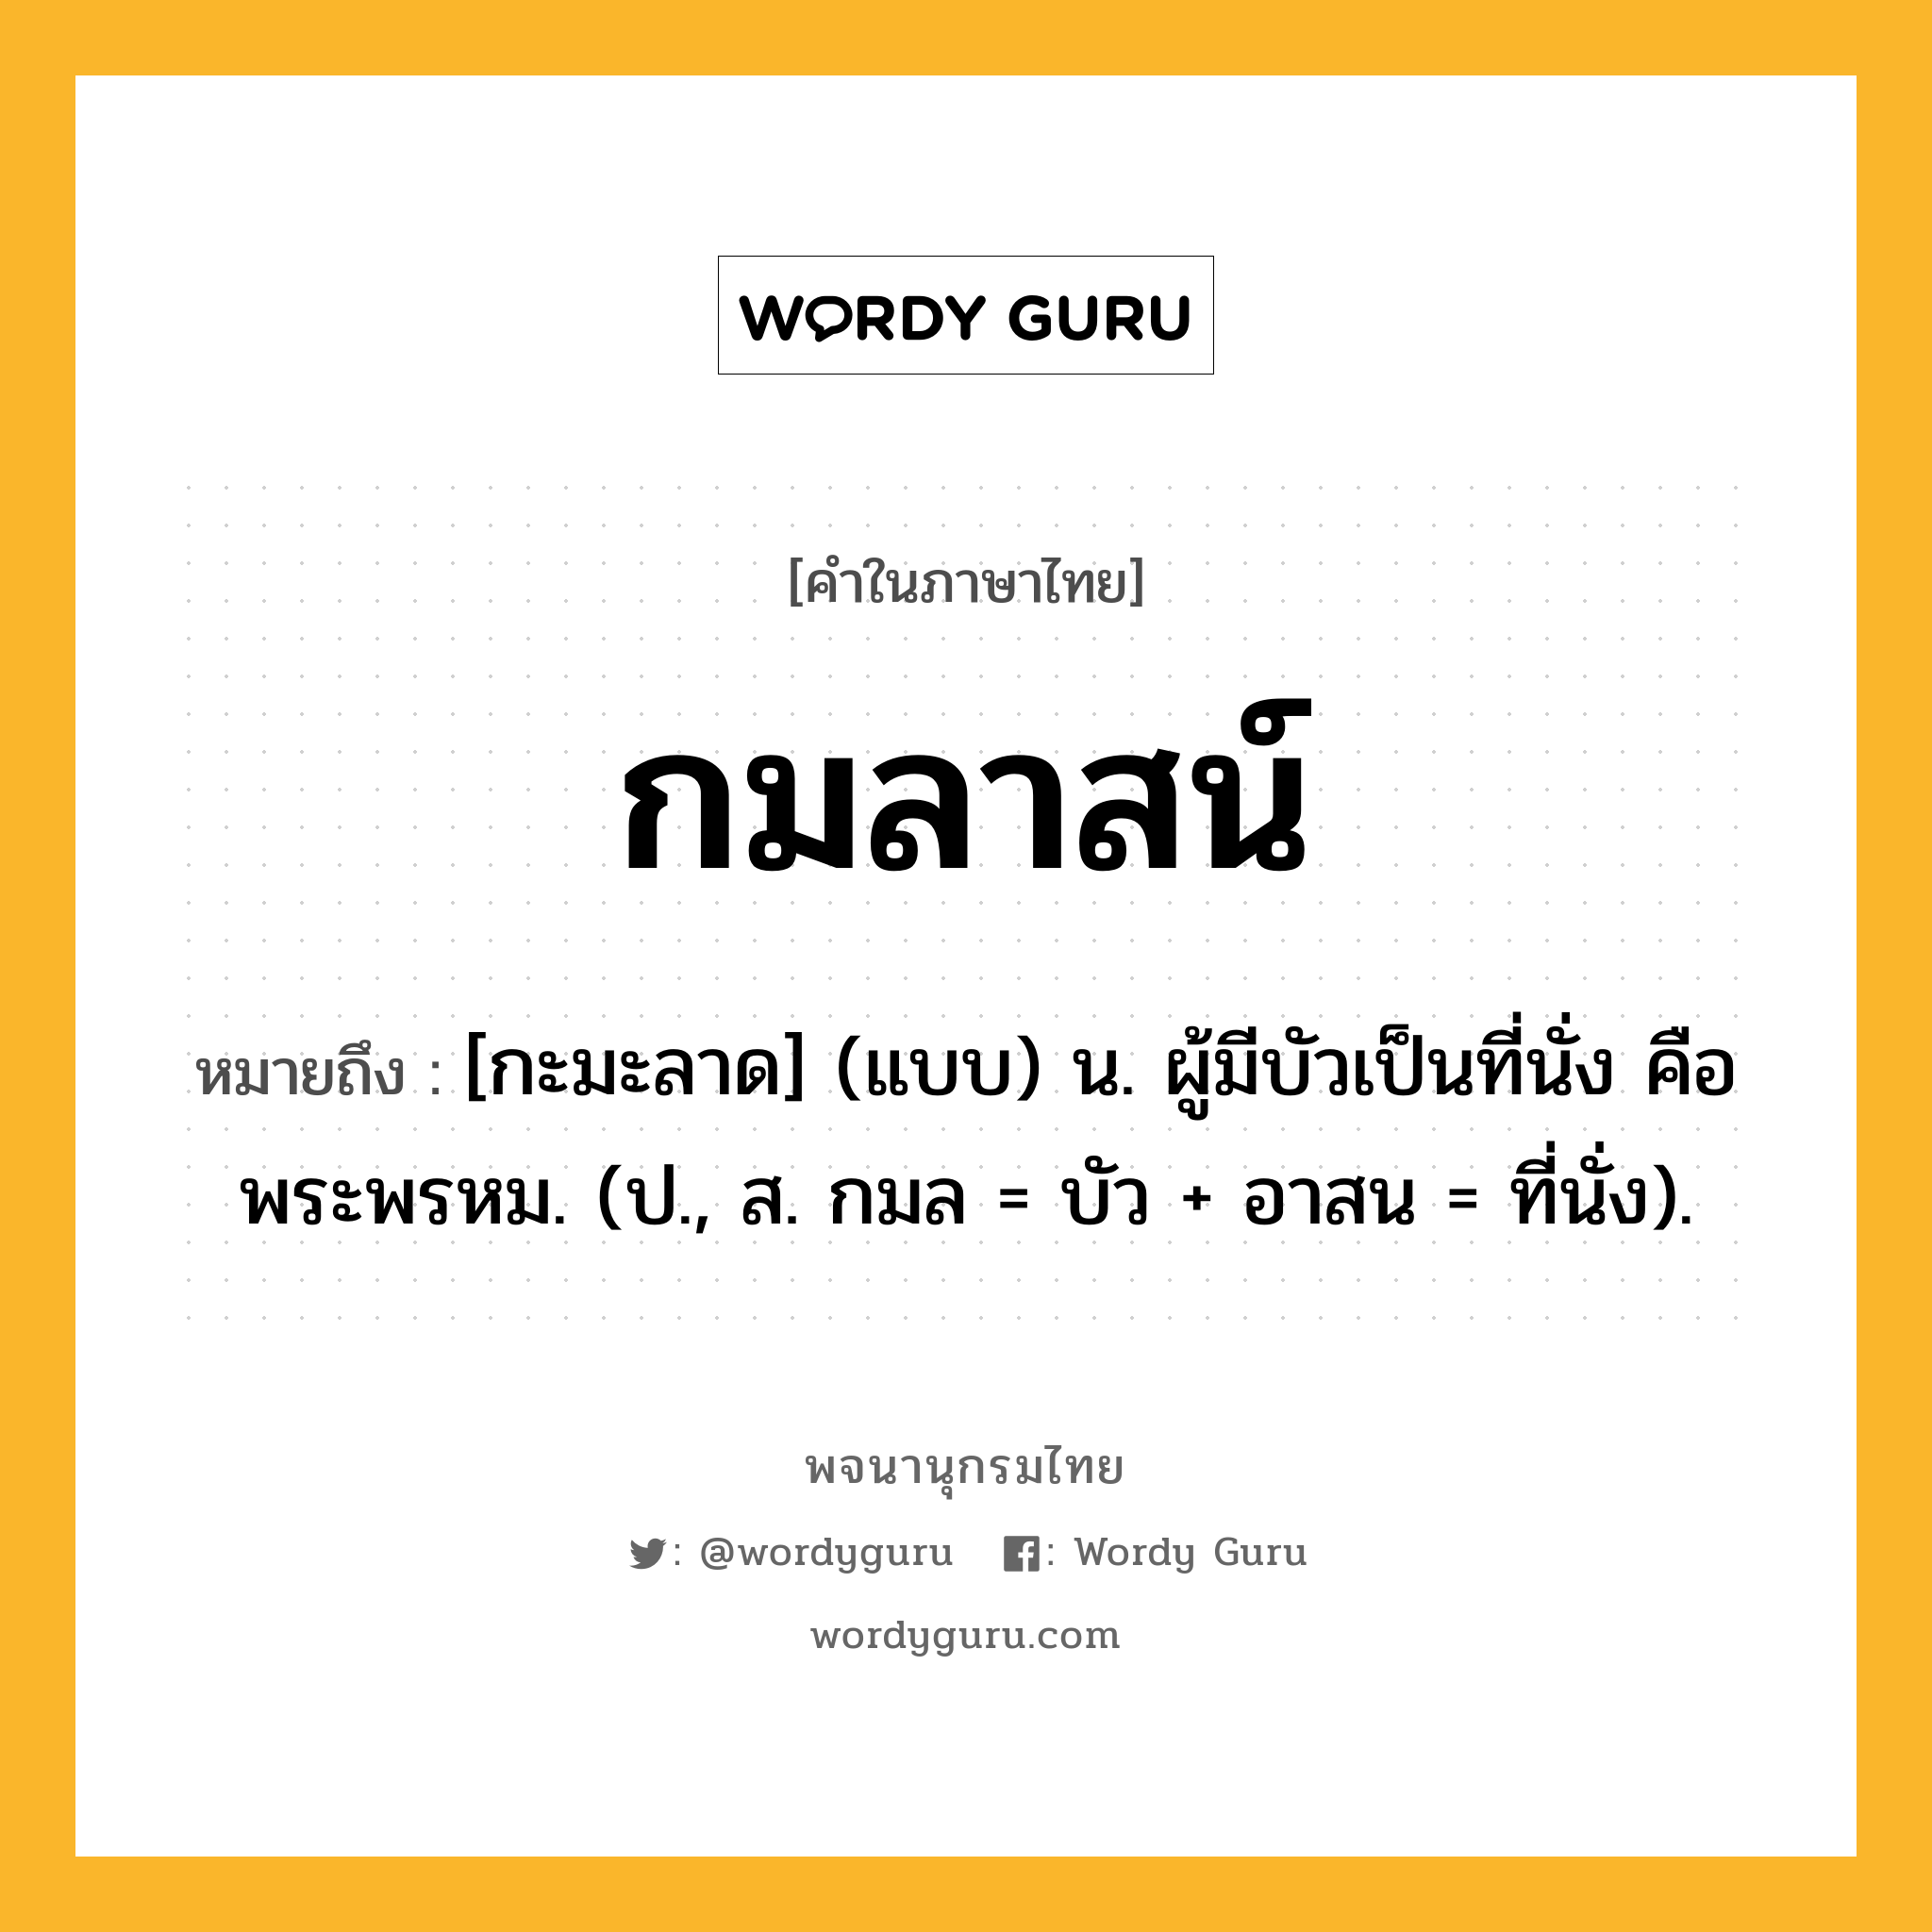 กมลาสน์ ความหมาย หมายถึงอะไร?, คำในภาษาไทย กมลาสน์ หมายถึง [กะมะลาด] (แบบ) น. ผู้มีบัวเป็นที่นั่ง คือ พระพรหม. (ป., ส. กมล = บัว + อาสน = ที่นั่ง).